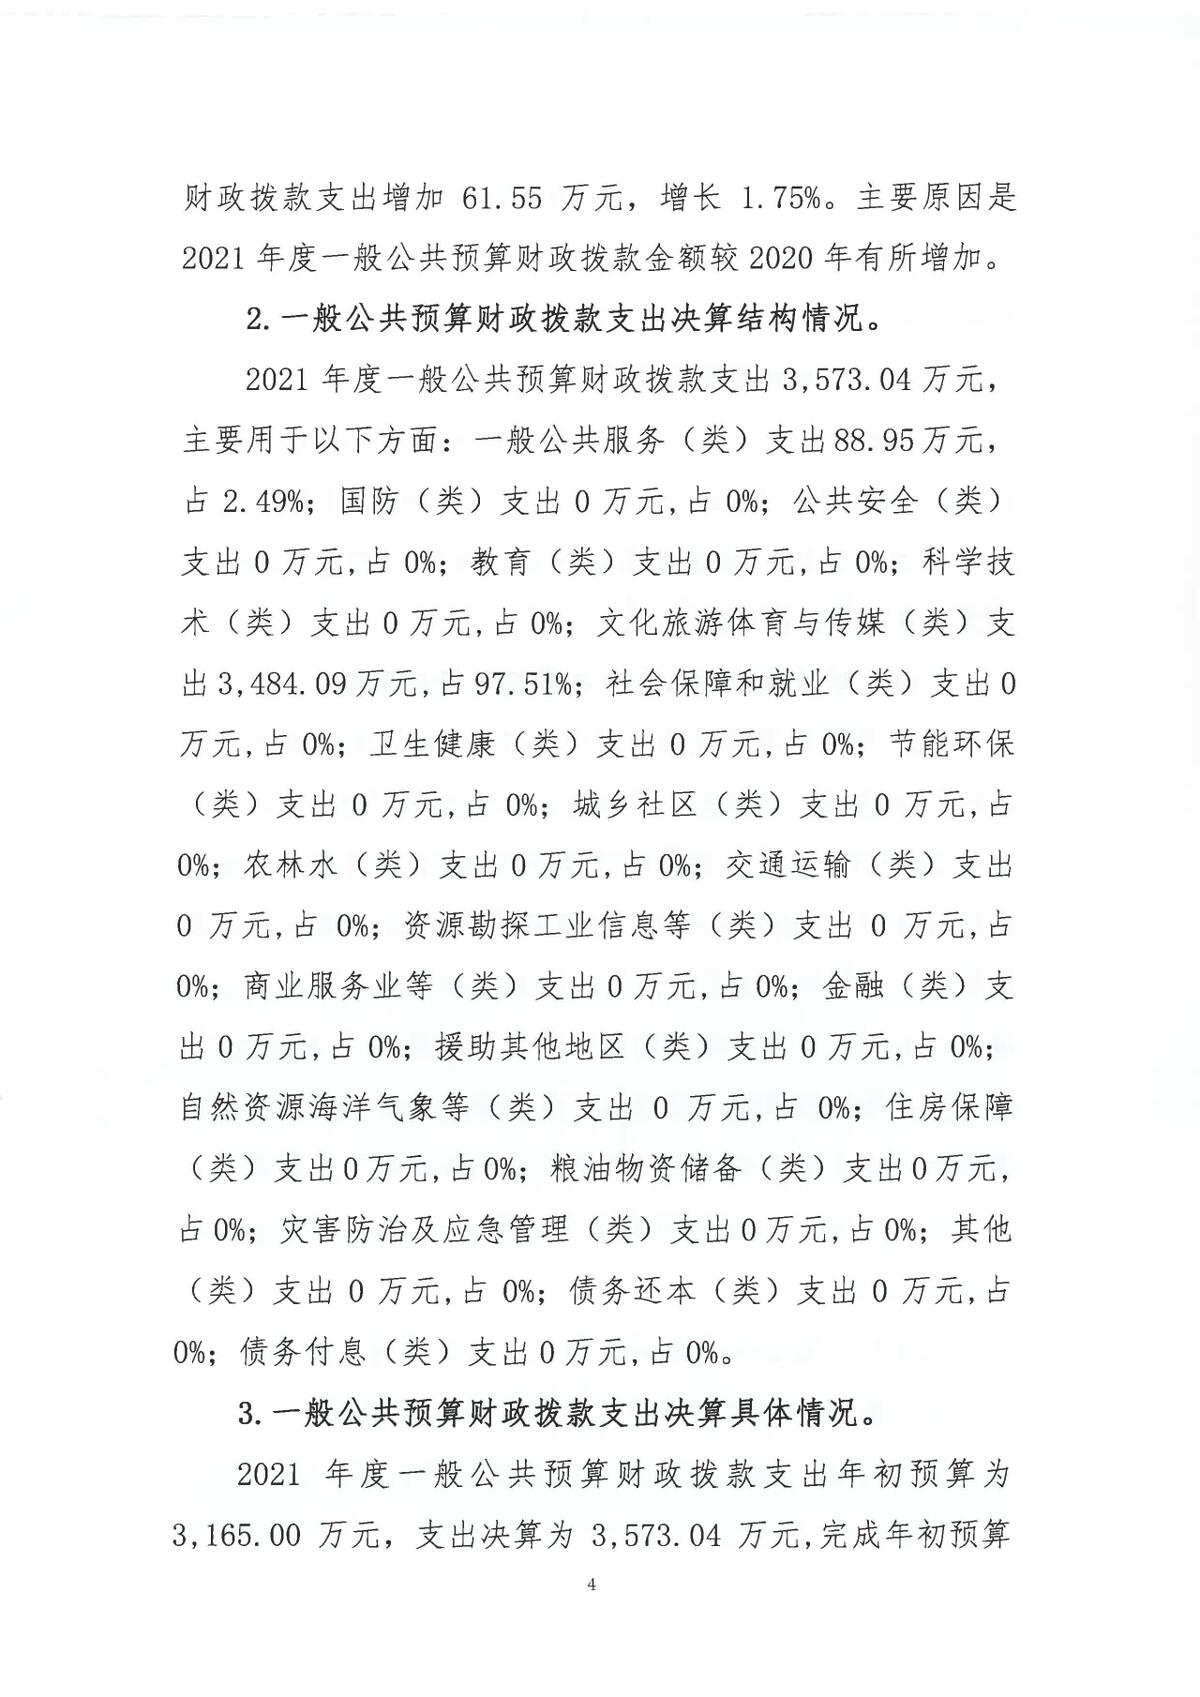 浙江日报报业集团2021年度部门决算_页面_06.jpg